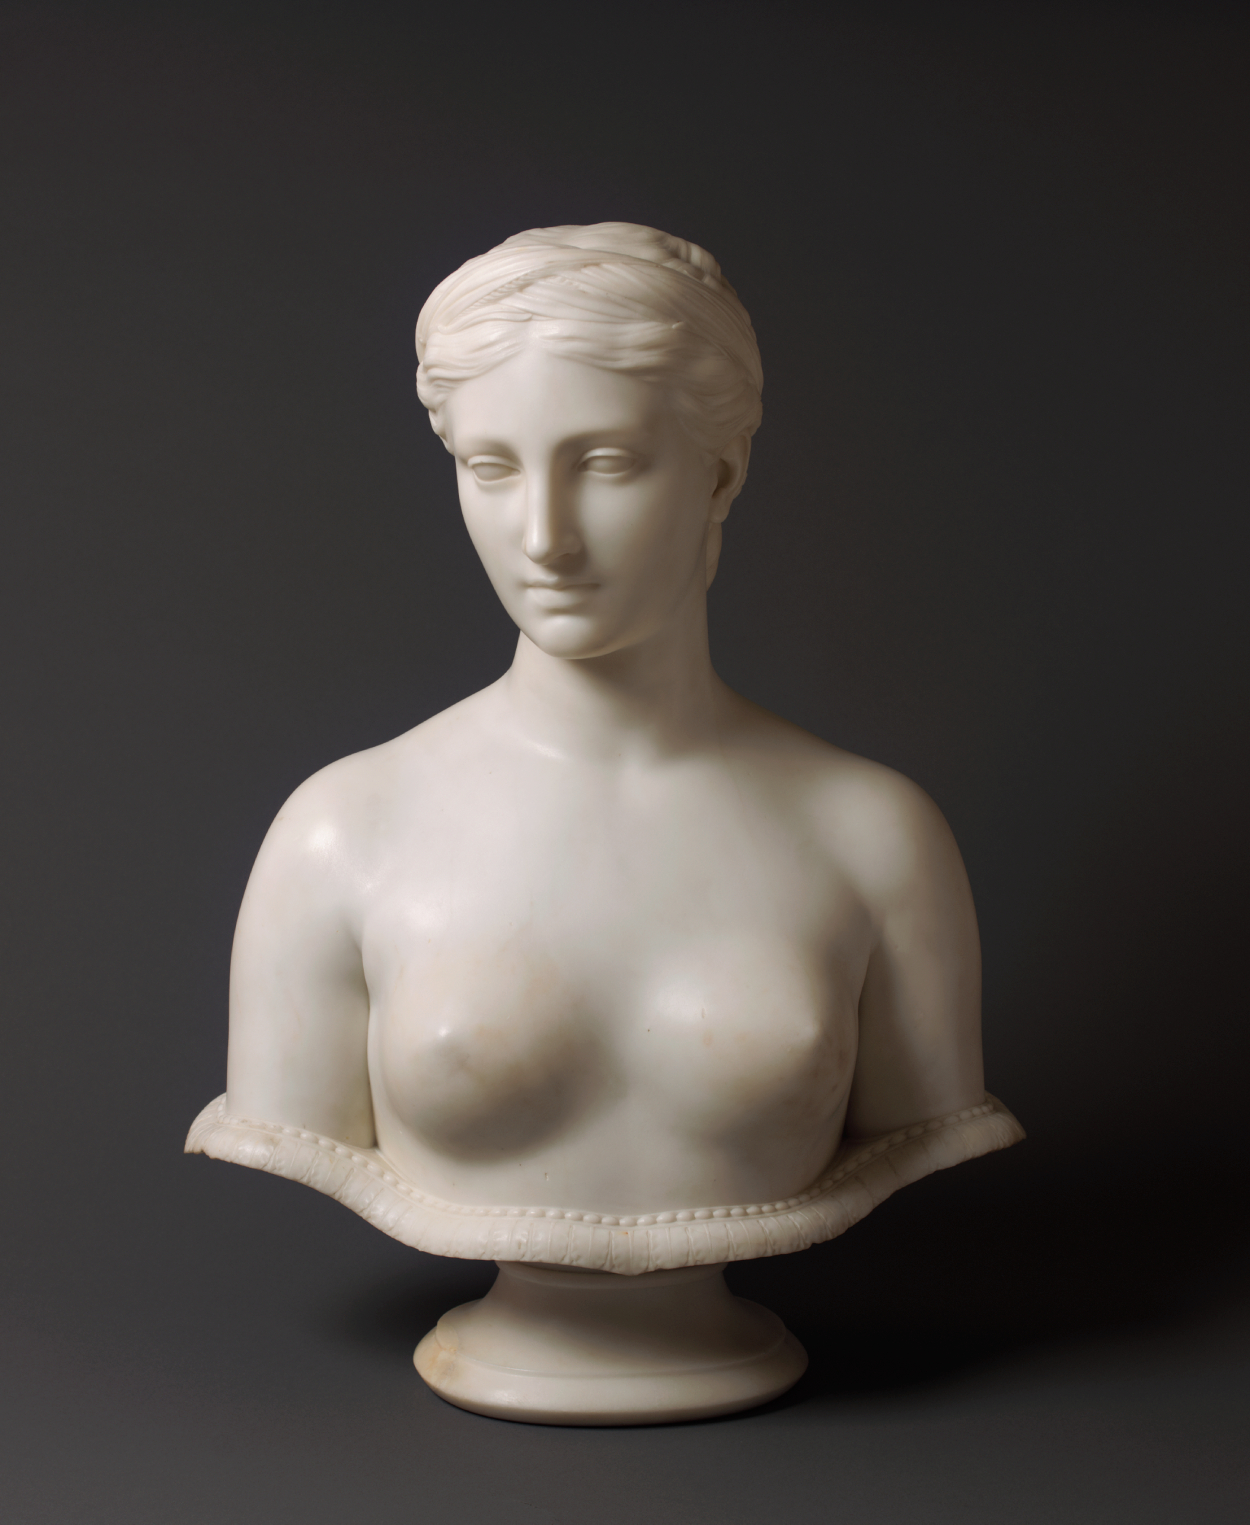 Proserpina by Hiram Powers - c. 1860 - 64,77 x 50,8 x 30,48 cm La Academia de Bellas Artes de Pensilvania